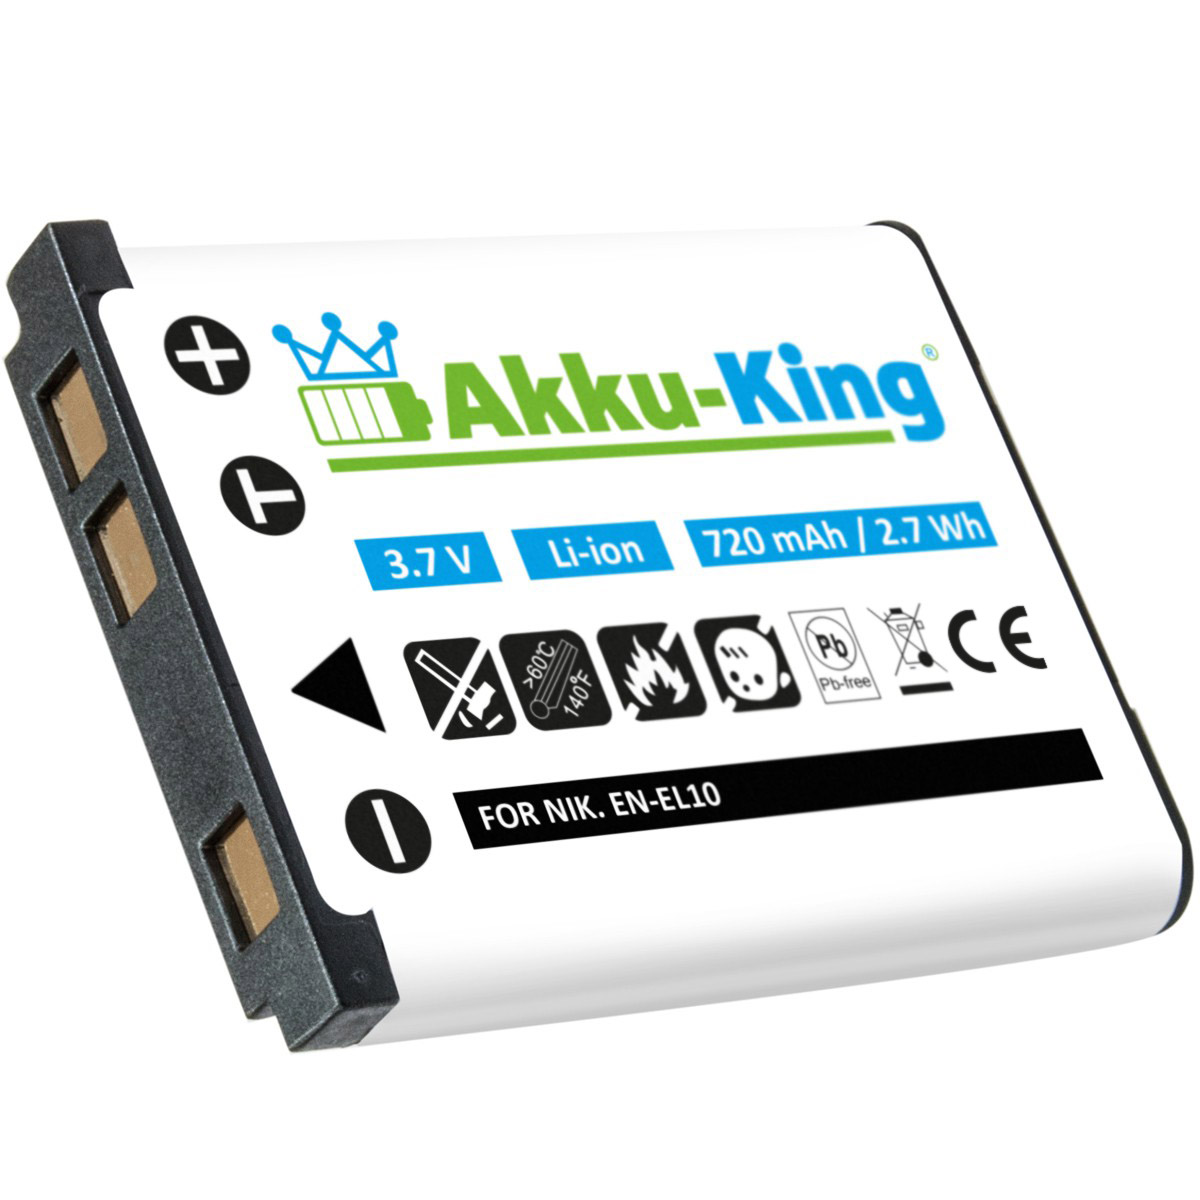 kompatibel Li-Ion AKKU-KING 3.7 Ricoh Akku Volt, 720mAh Kamera-Akku, mit DS-6365